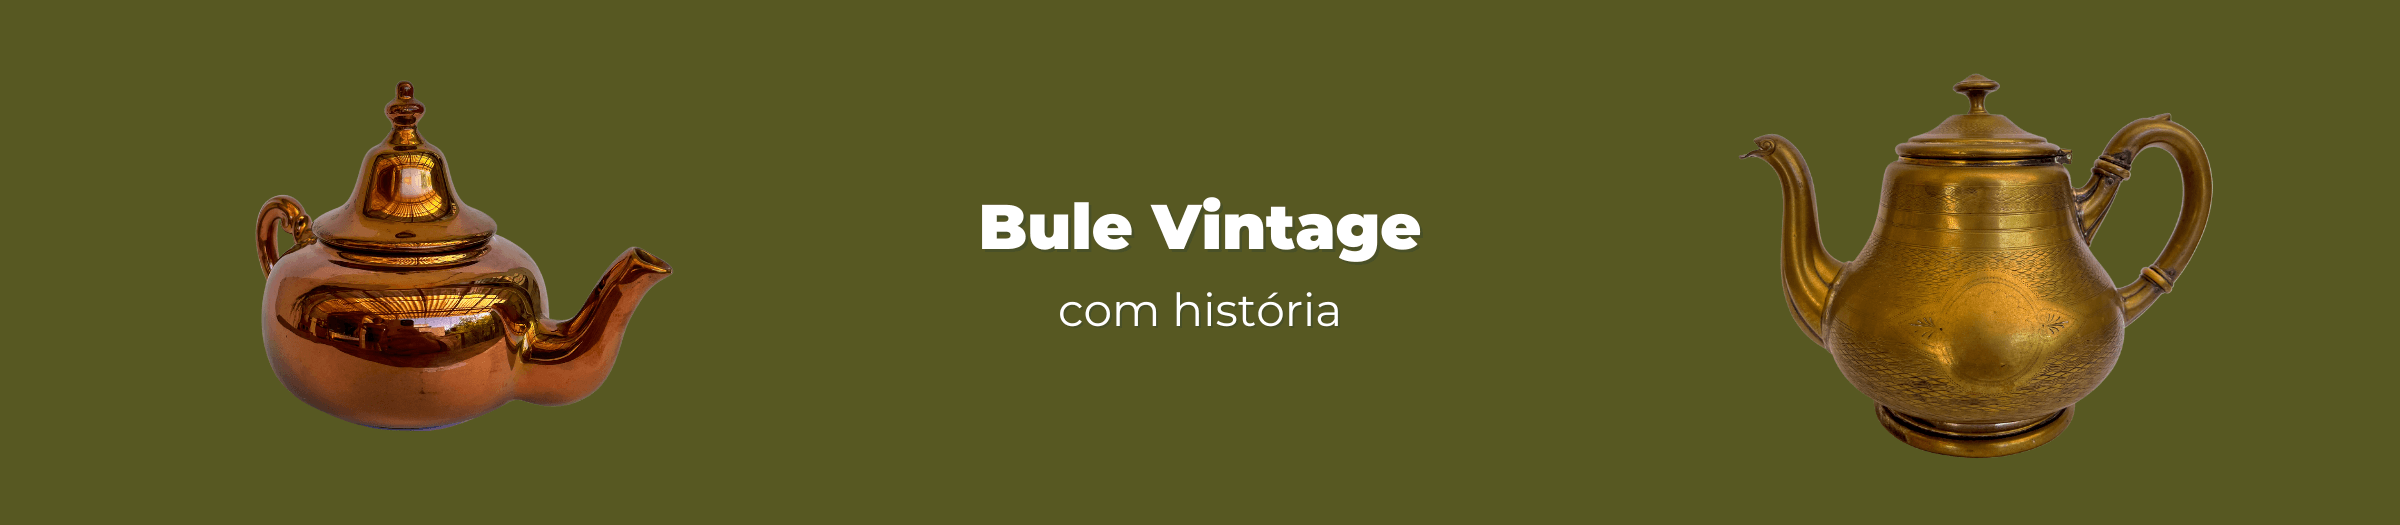 bule vintage